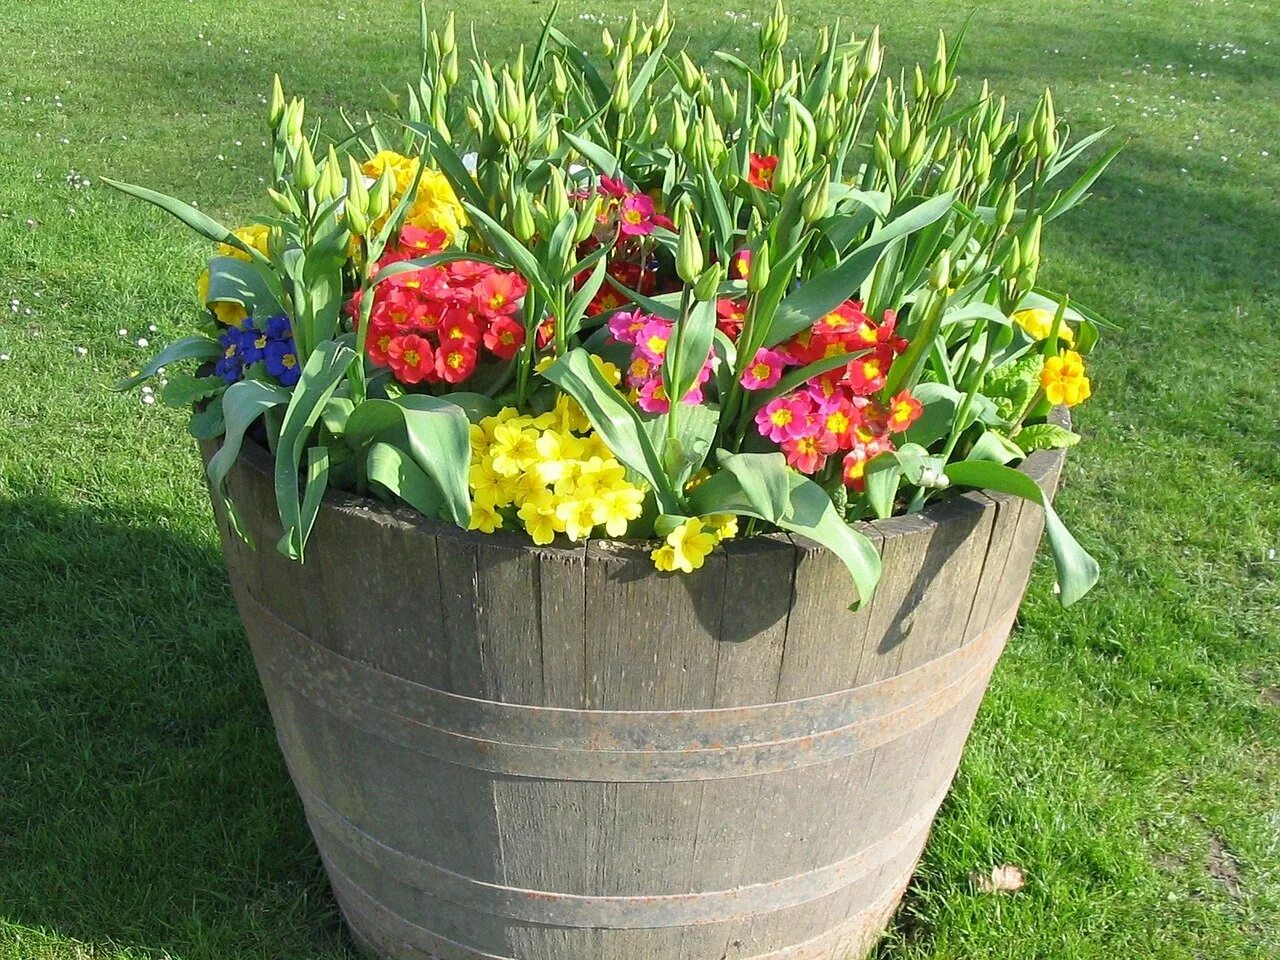 Посадка цветов в кашпо. Цветочные композиции в горшках для сада. Тюльпаны в горшке. Клумба в горшке. Цветы в горшках на даче.